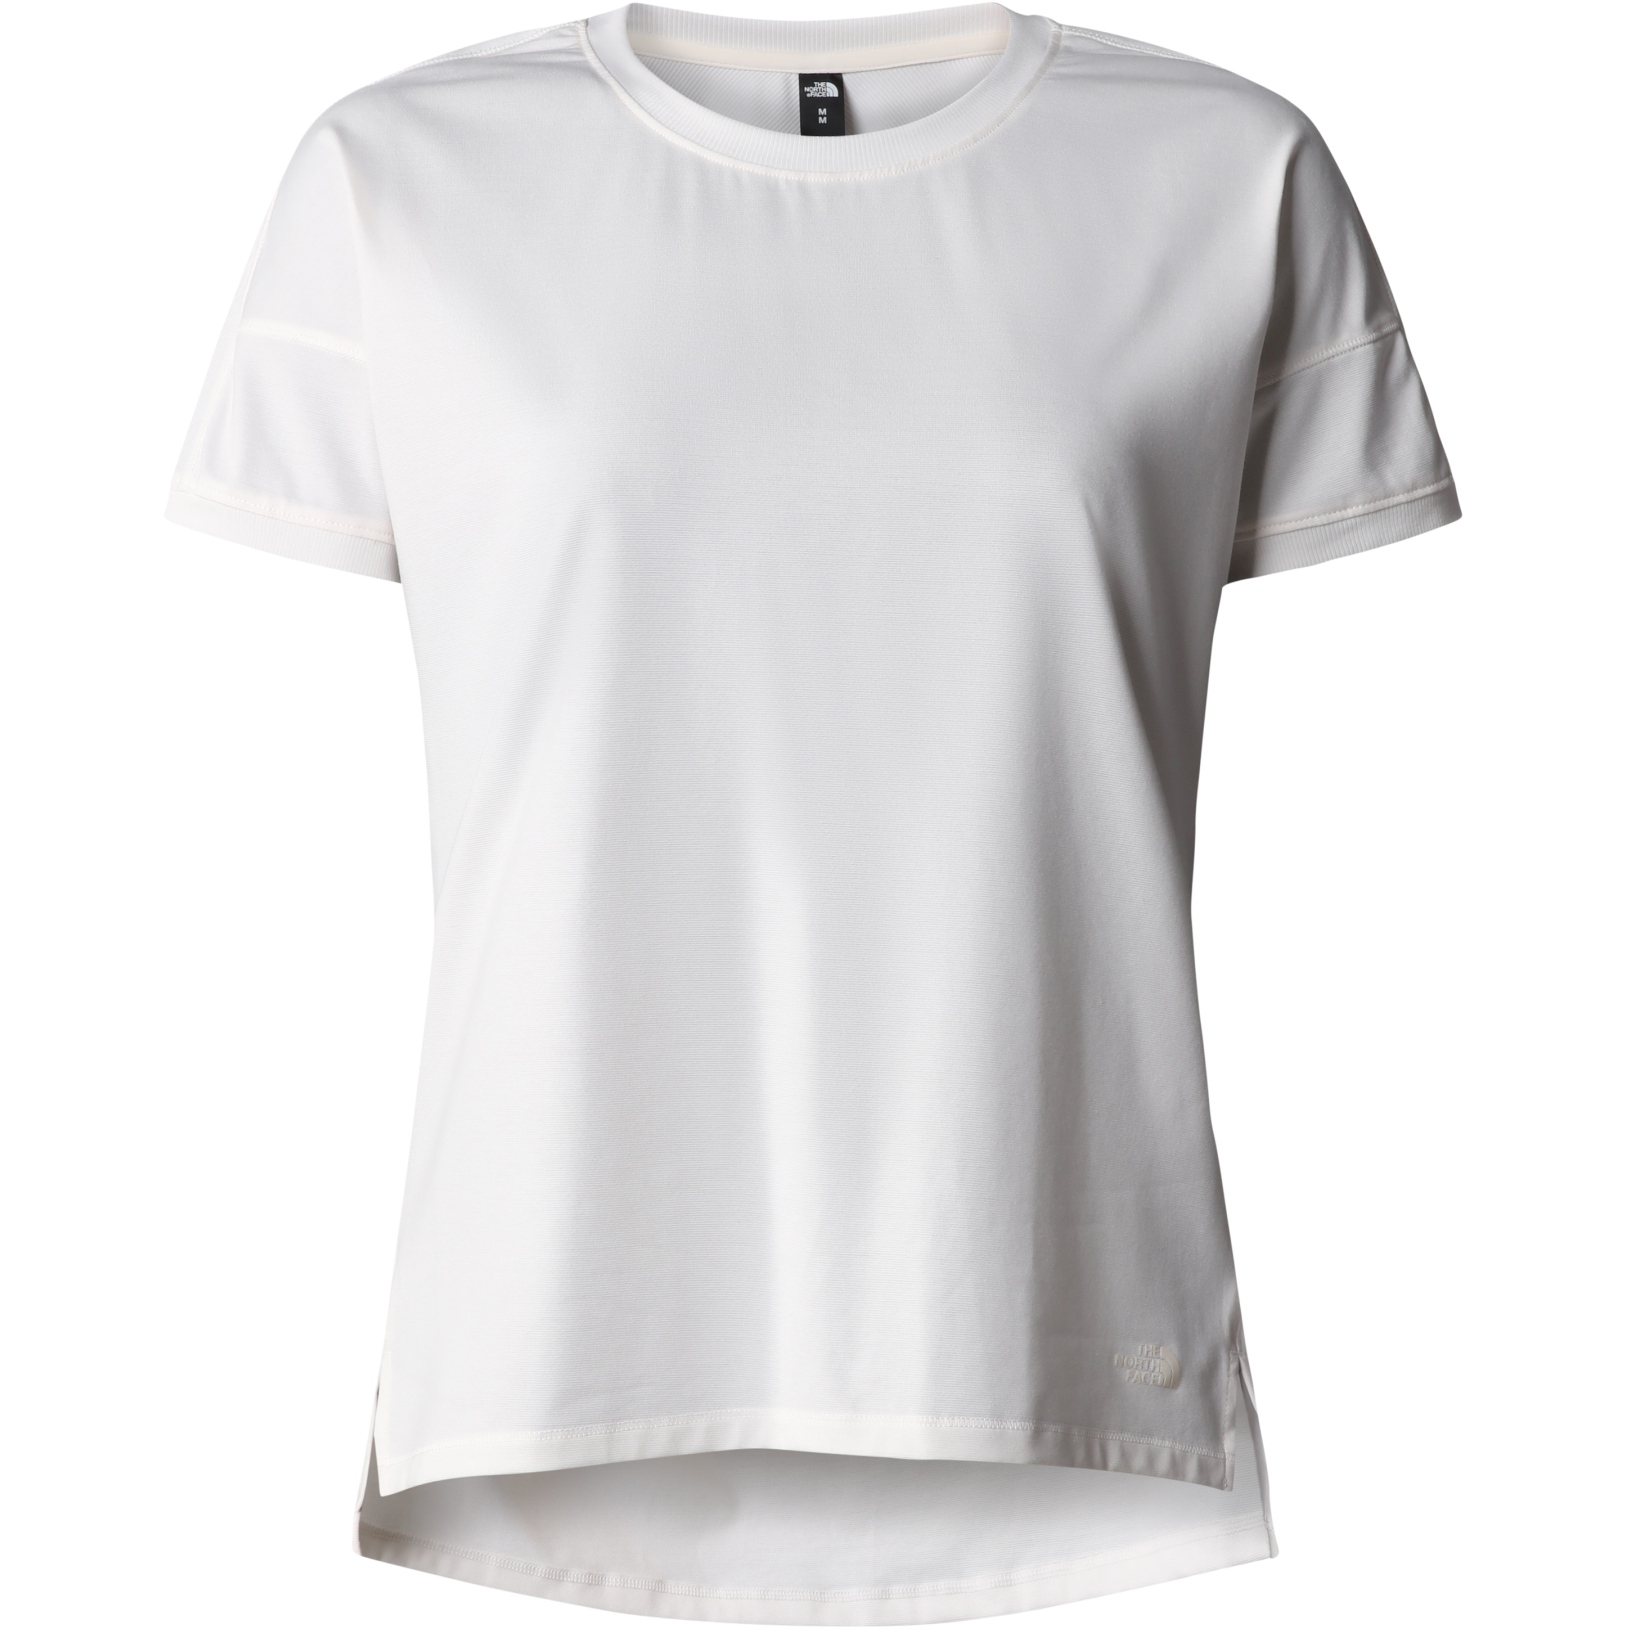 Produktbild von The North Face Dawn Dream T-Shirt Damen - Gardenia White Heather